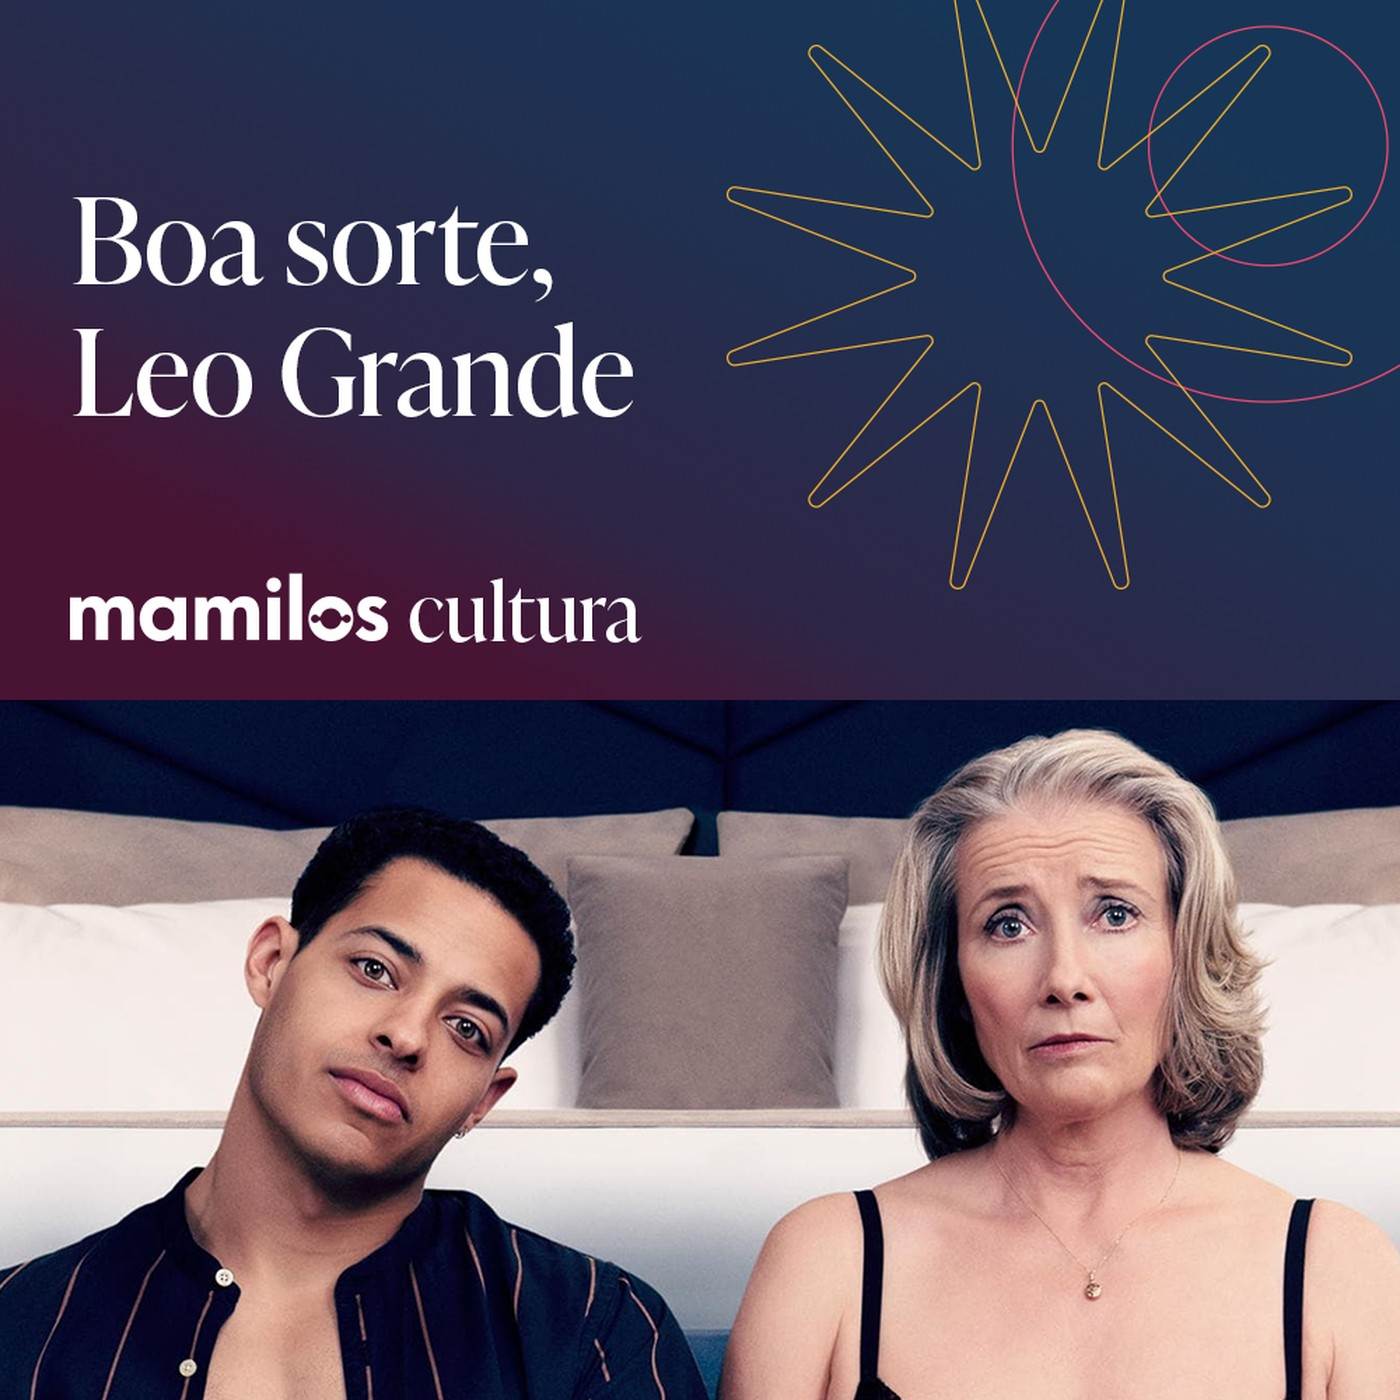 Mamilos Cultura 68: Filme ”Boa Sorte, Leo Grande” - culpa, medo e prazer